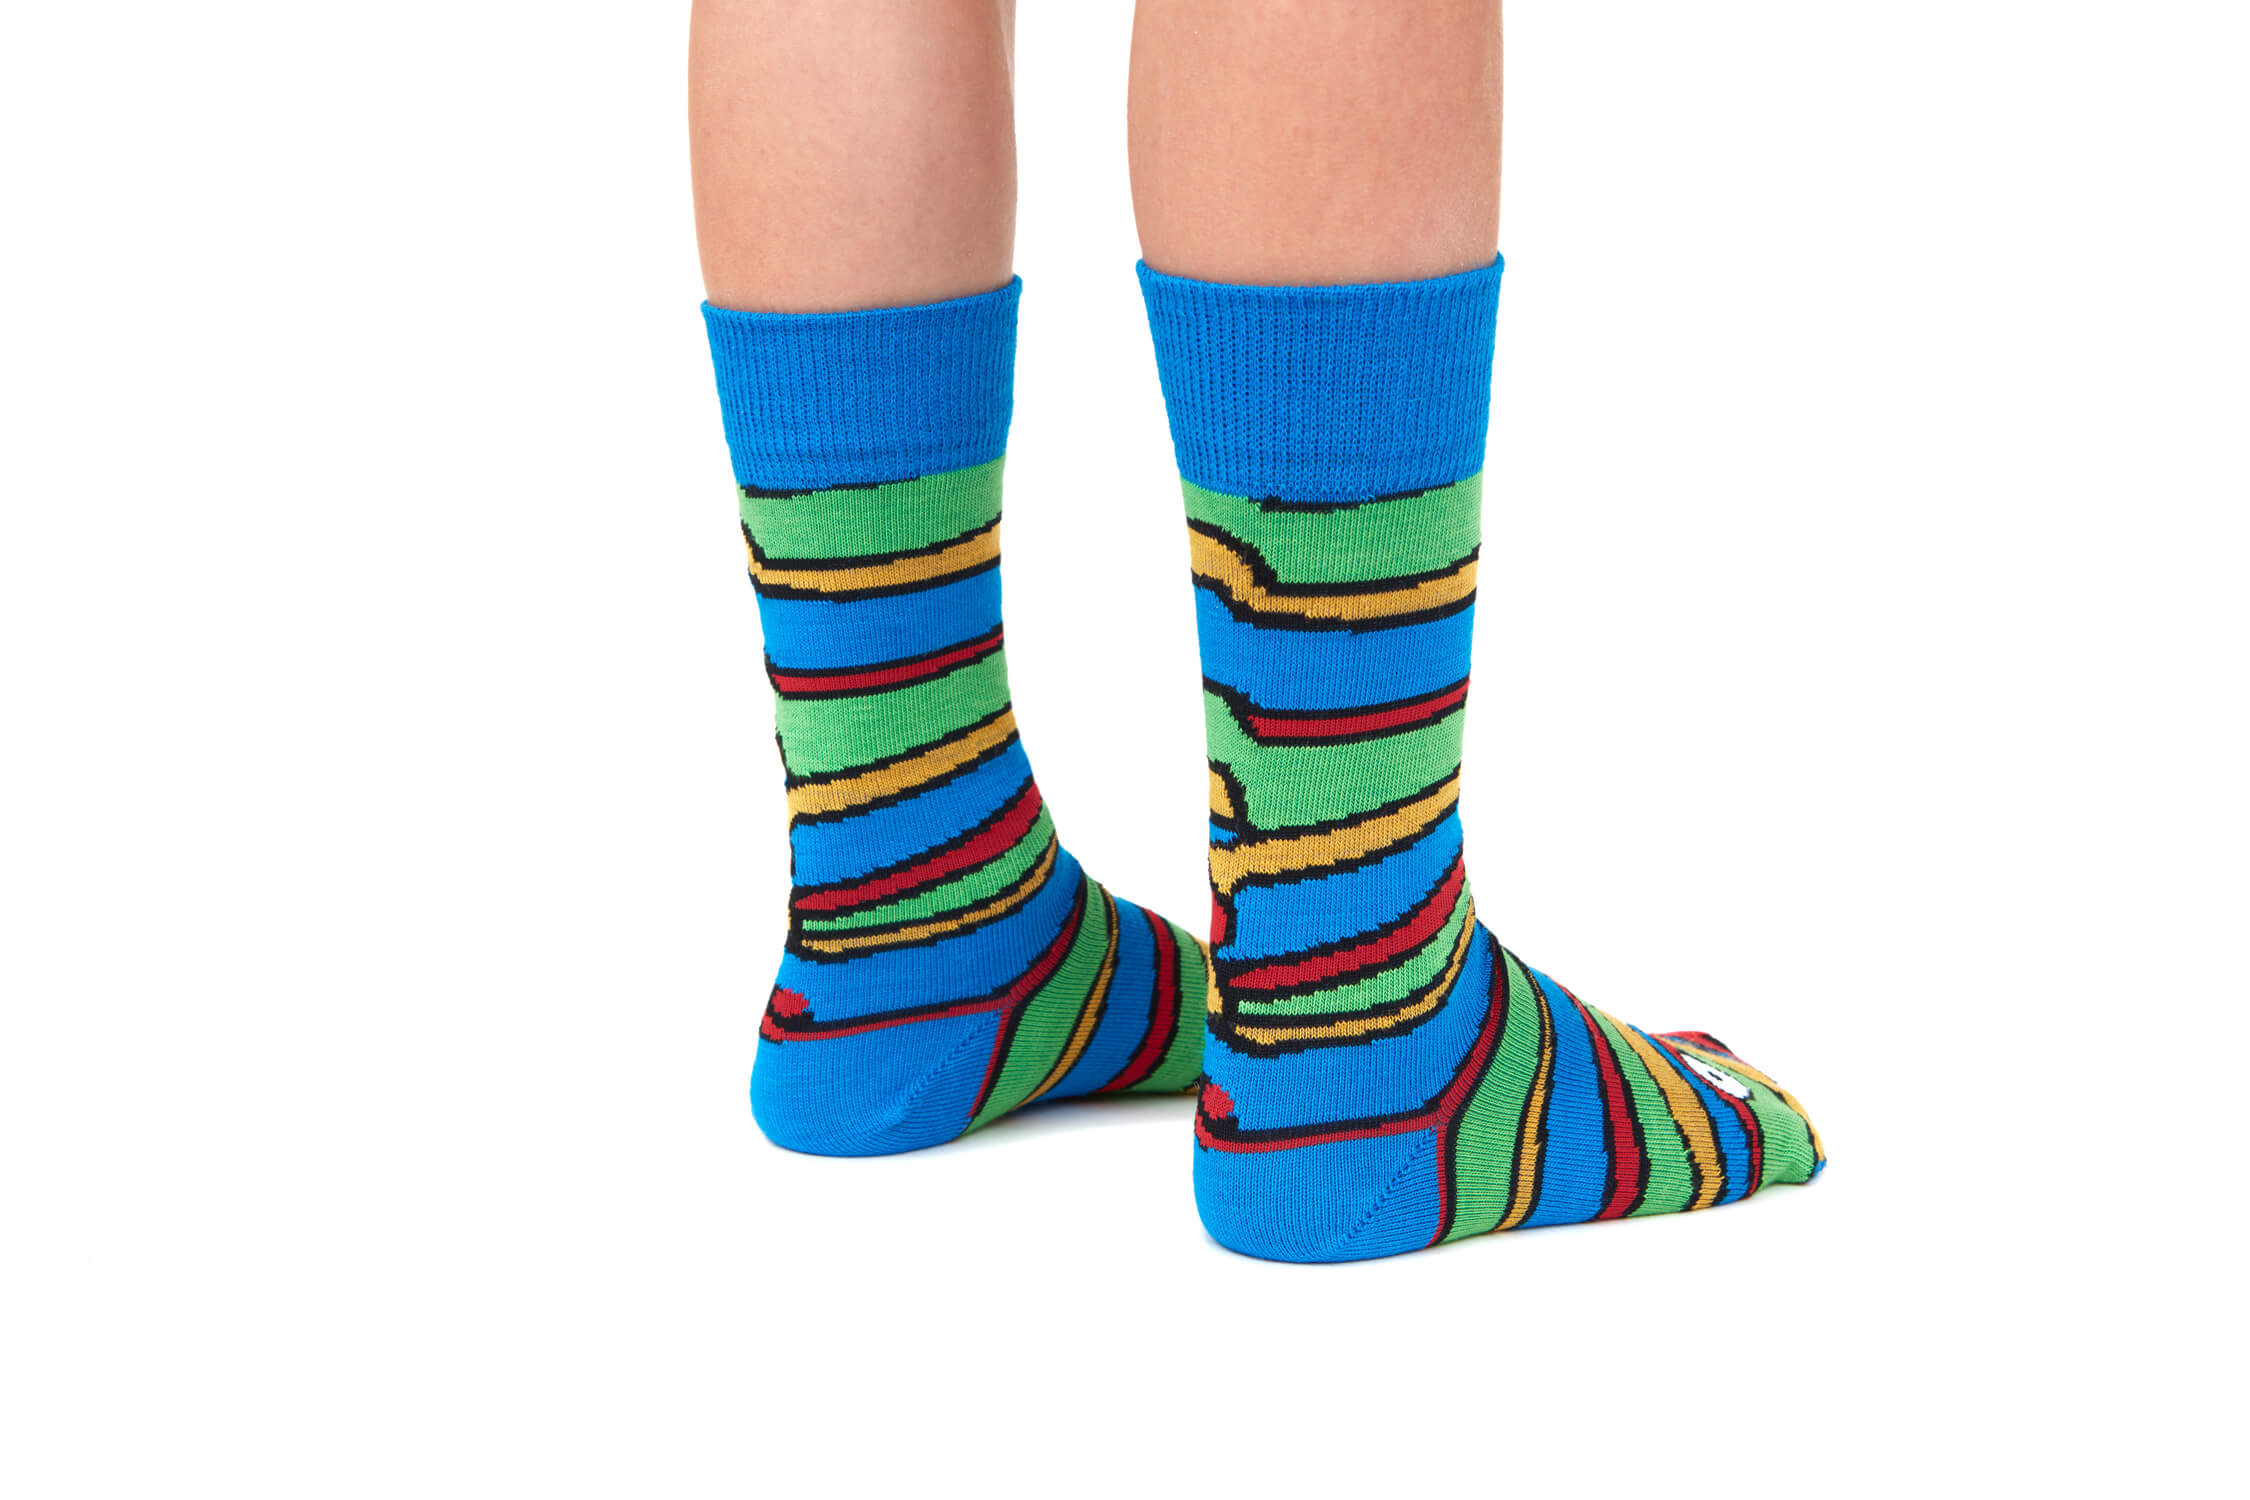 Happy Socks Mens Size 8-12 Multi Stripe Liner Socks Combed Cotton 1 Pair  $12